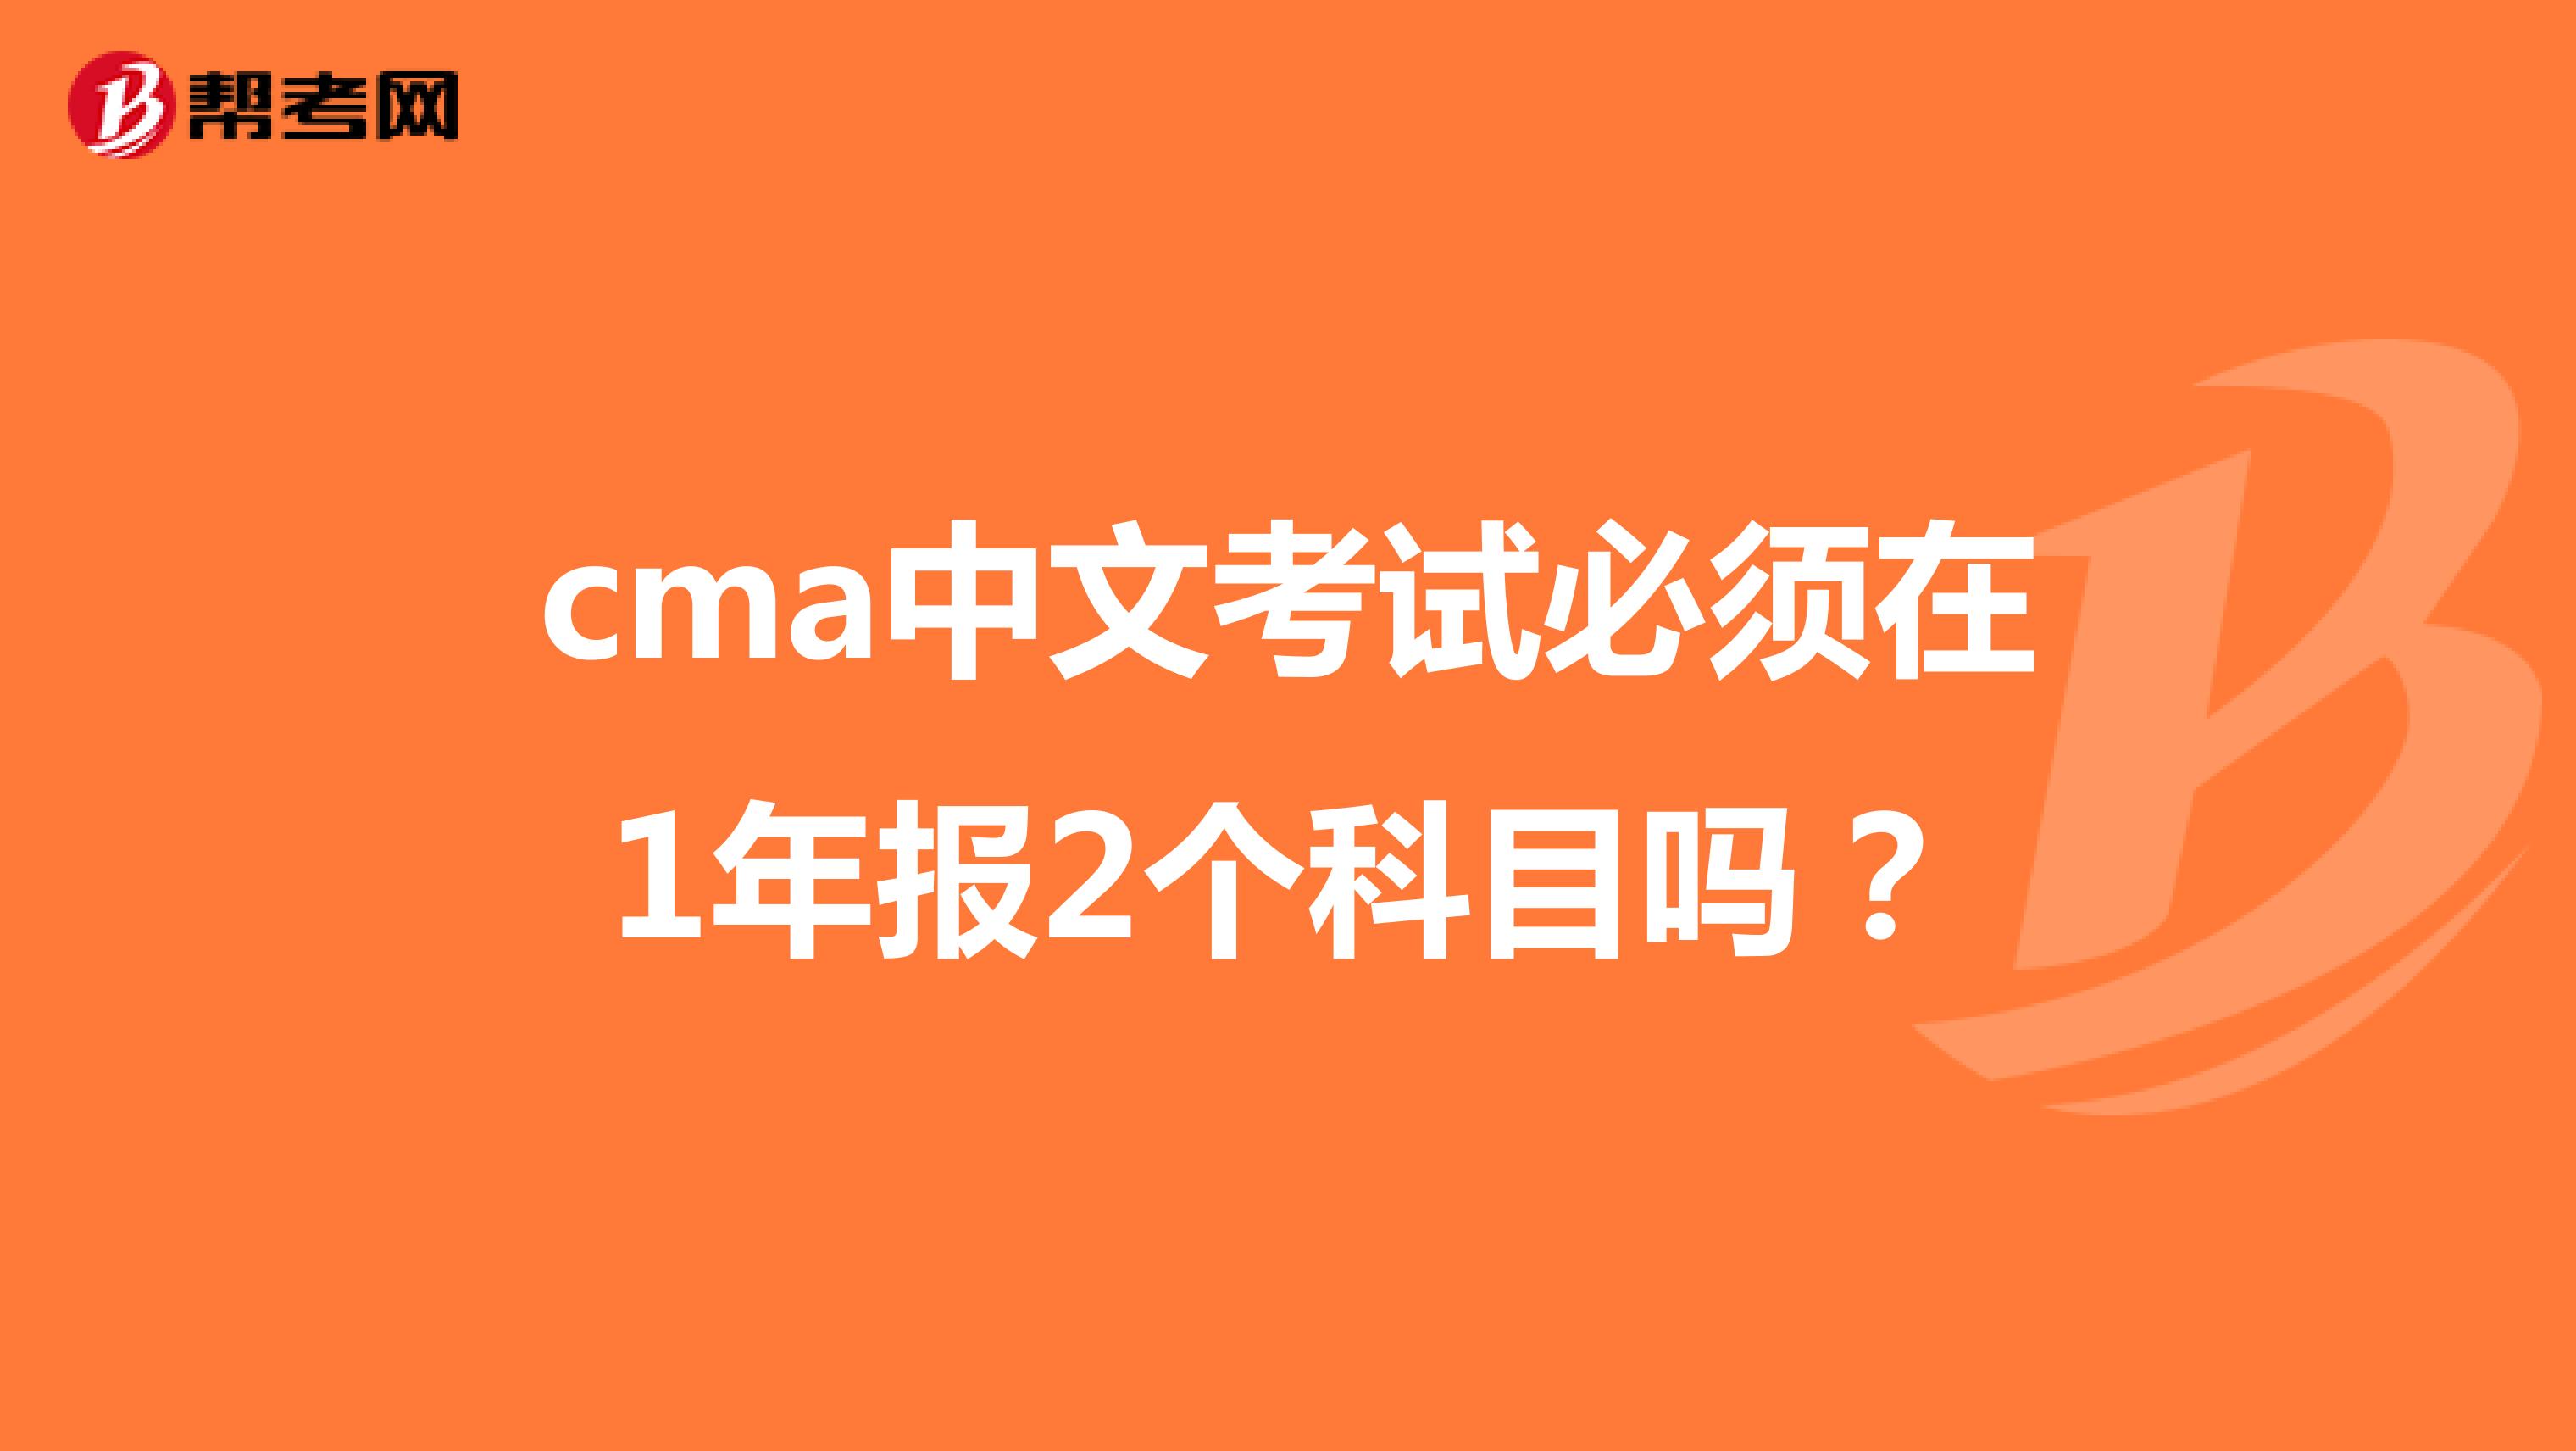 cma中文考试必须在1年报2个科目吗？